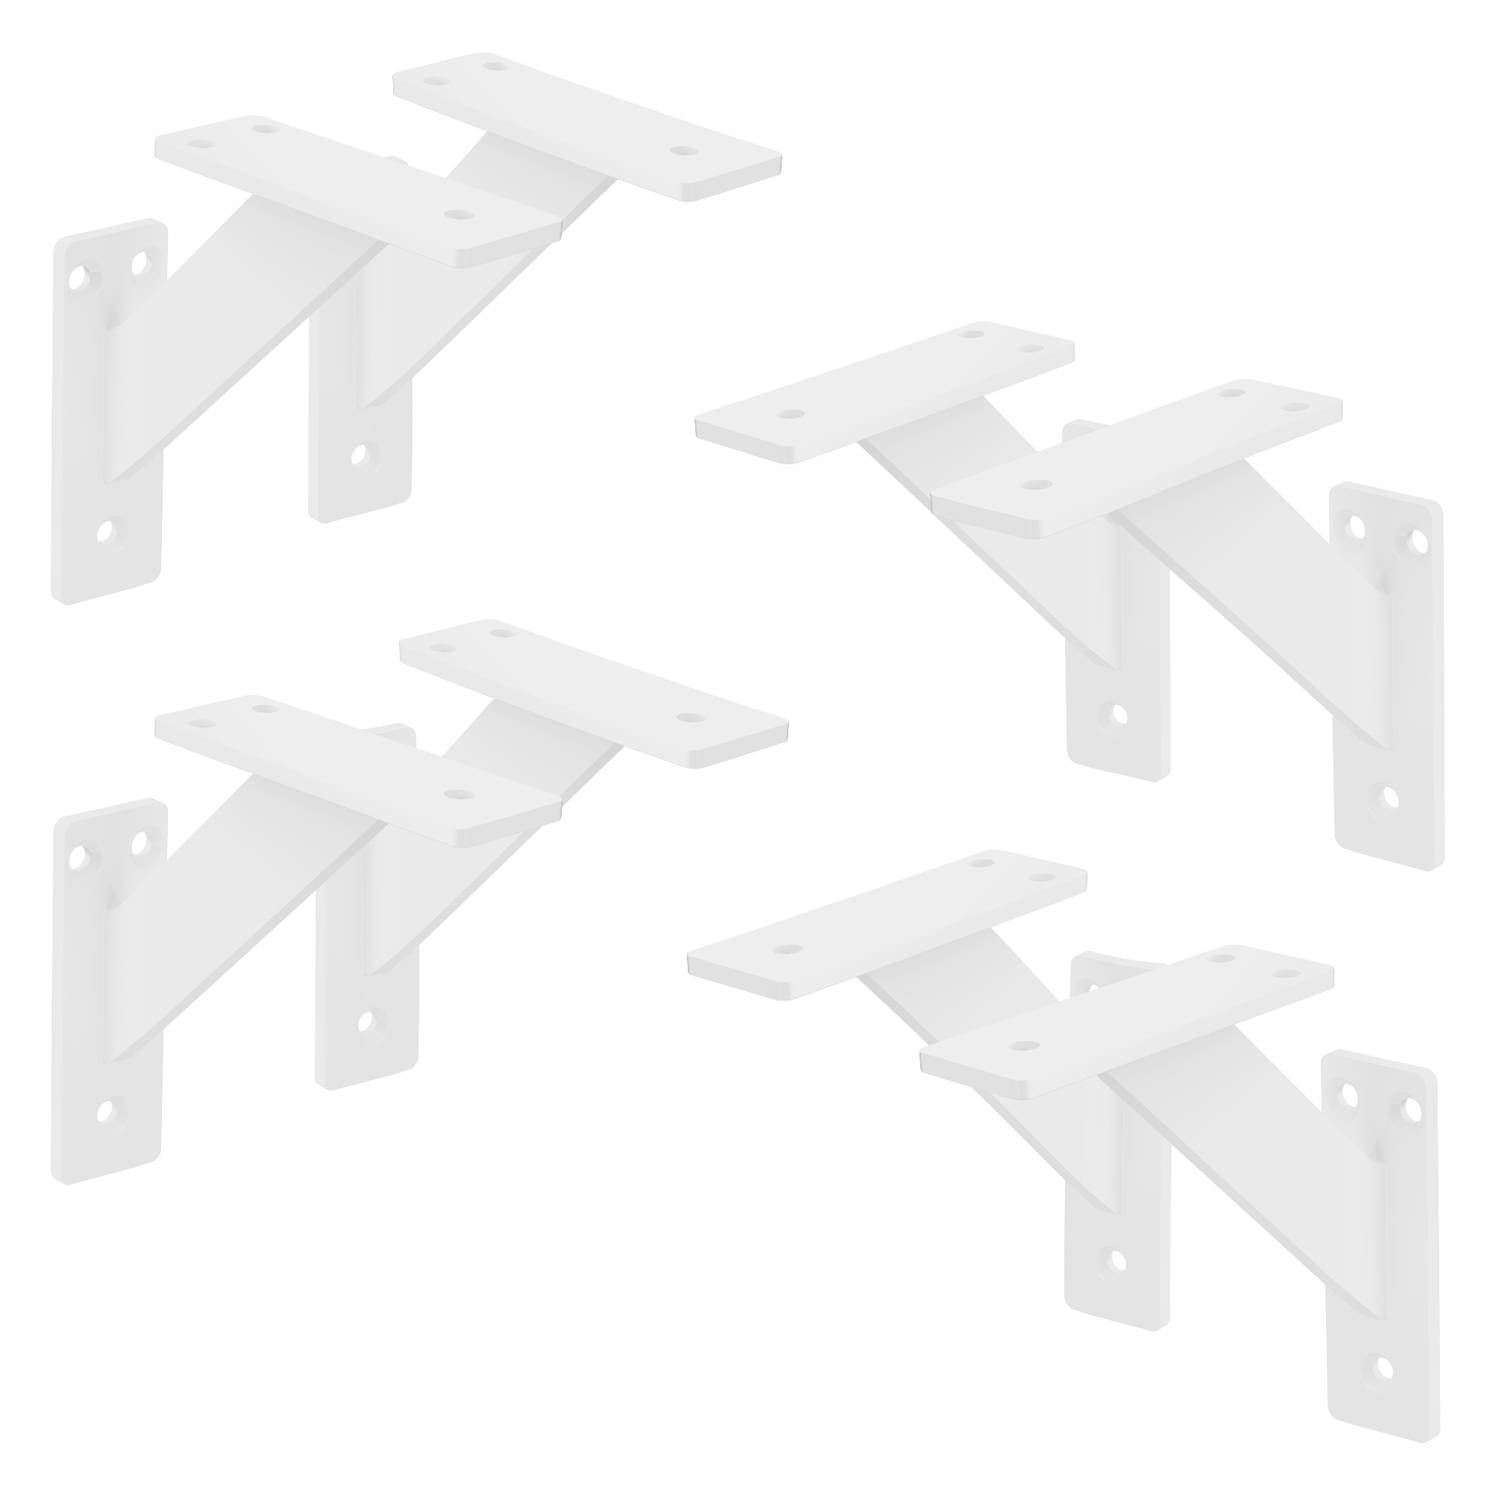 ML-Design 8 stuks Plankdrager 120x120 mm, Wit, Aluminium, Zwevende plankdrager, Plankdrager, Wanddrager voor plankdrager, Plankdrager voor wandmontage, Wandplank Wanddrager Plankdr